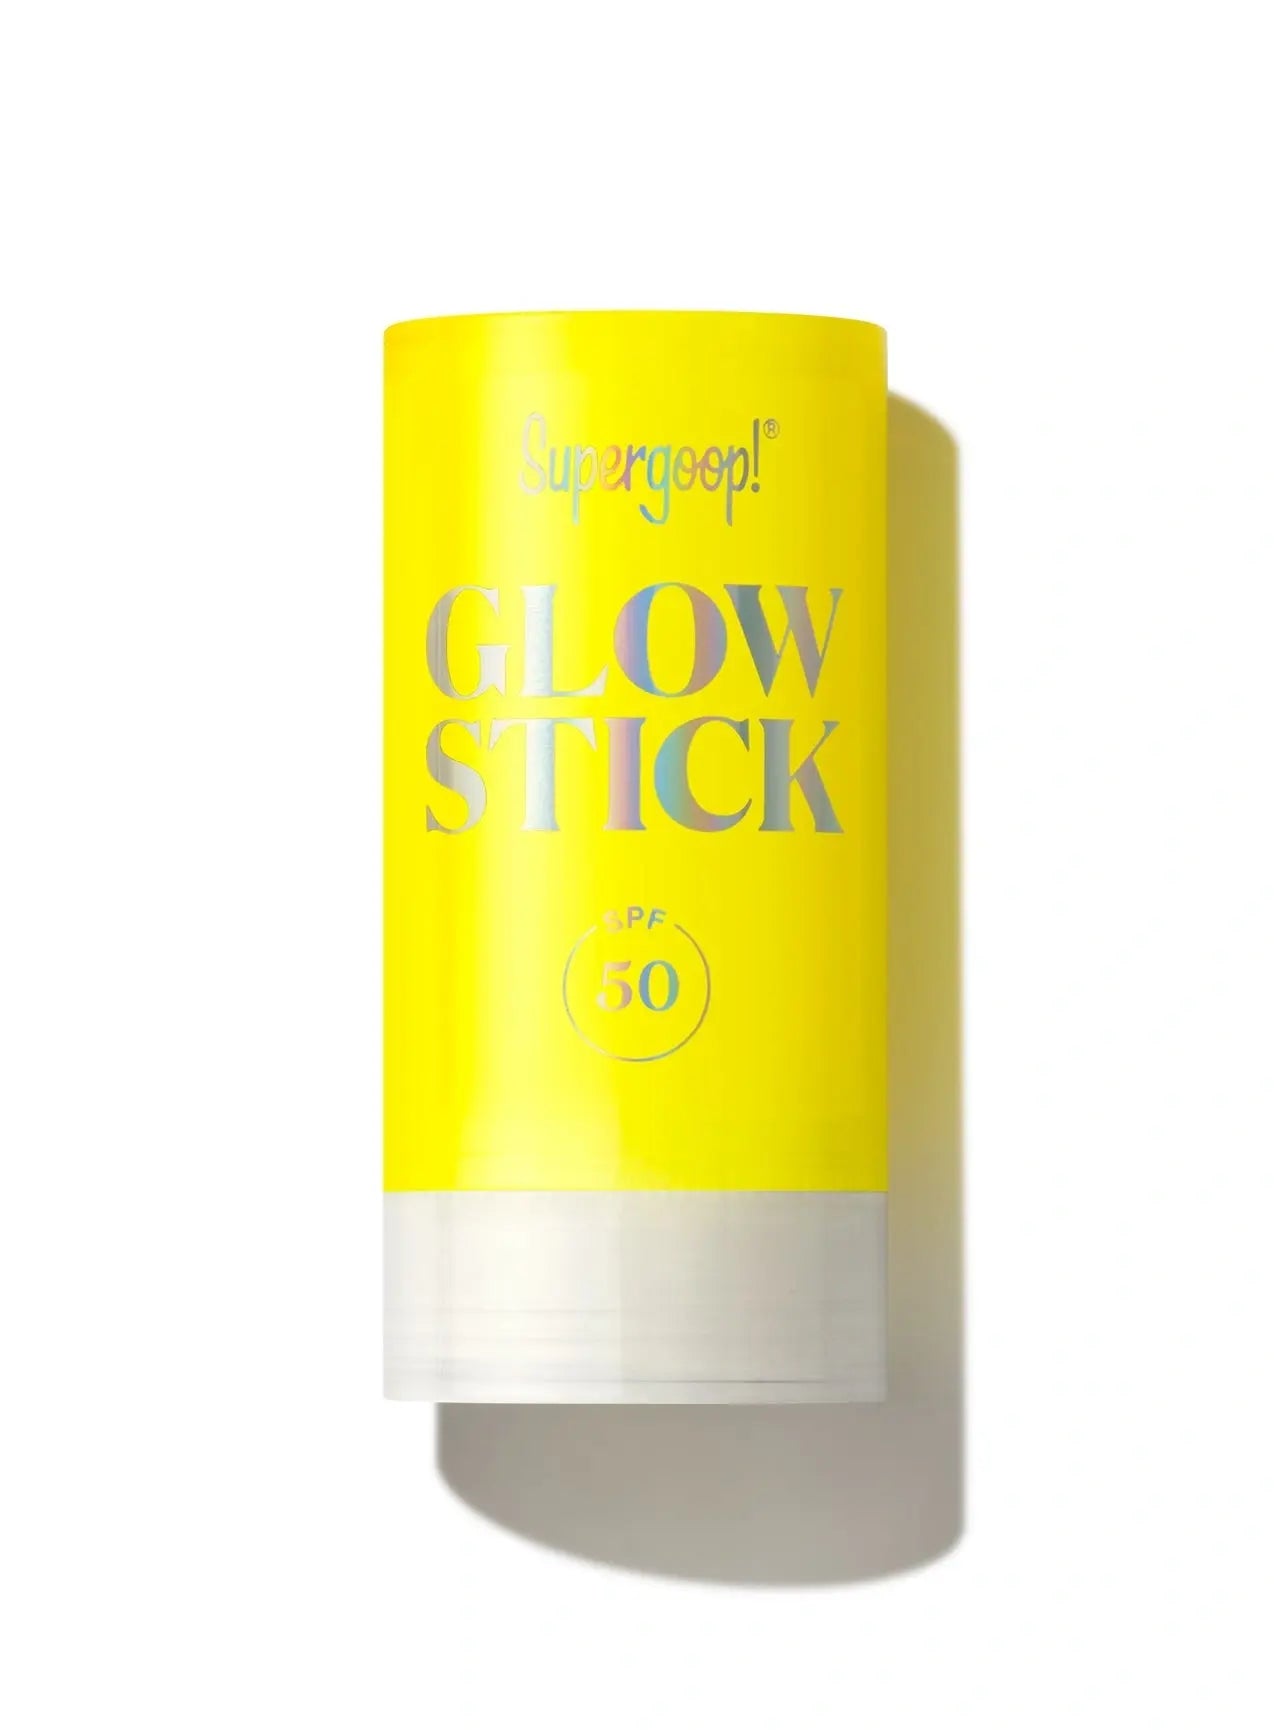 Glow Stick SPF 50, 0.7 oz